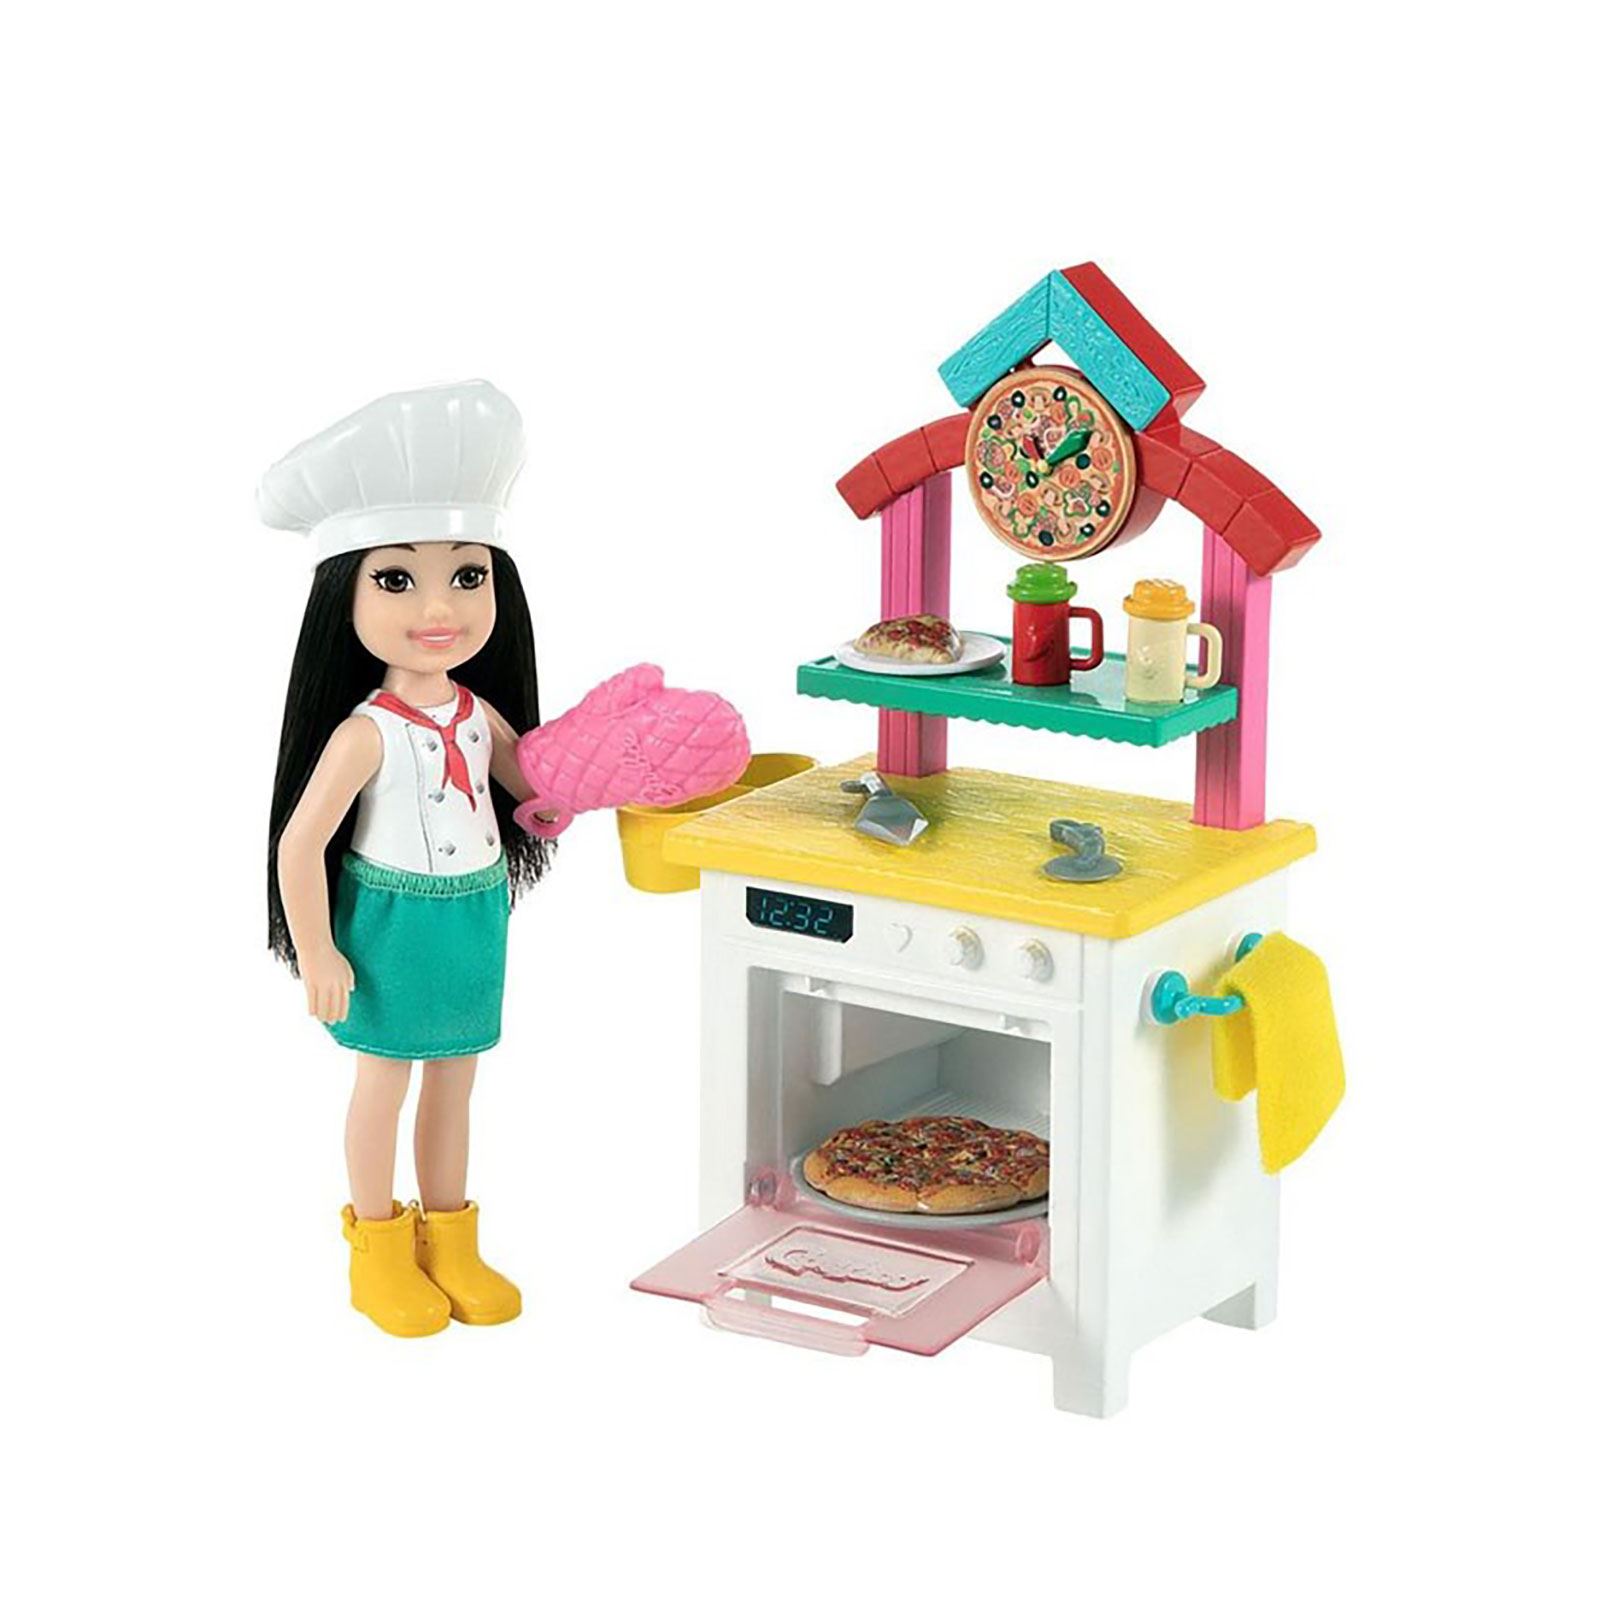 Barbie Chelsea Meslekleri Öğreniyor Bebek ve Oyun Seti Pizza Fırını